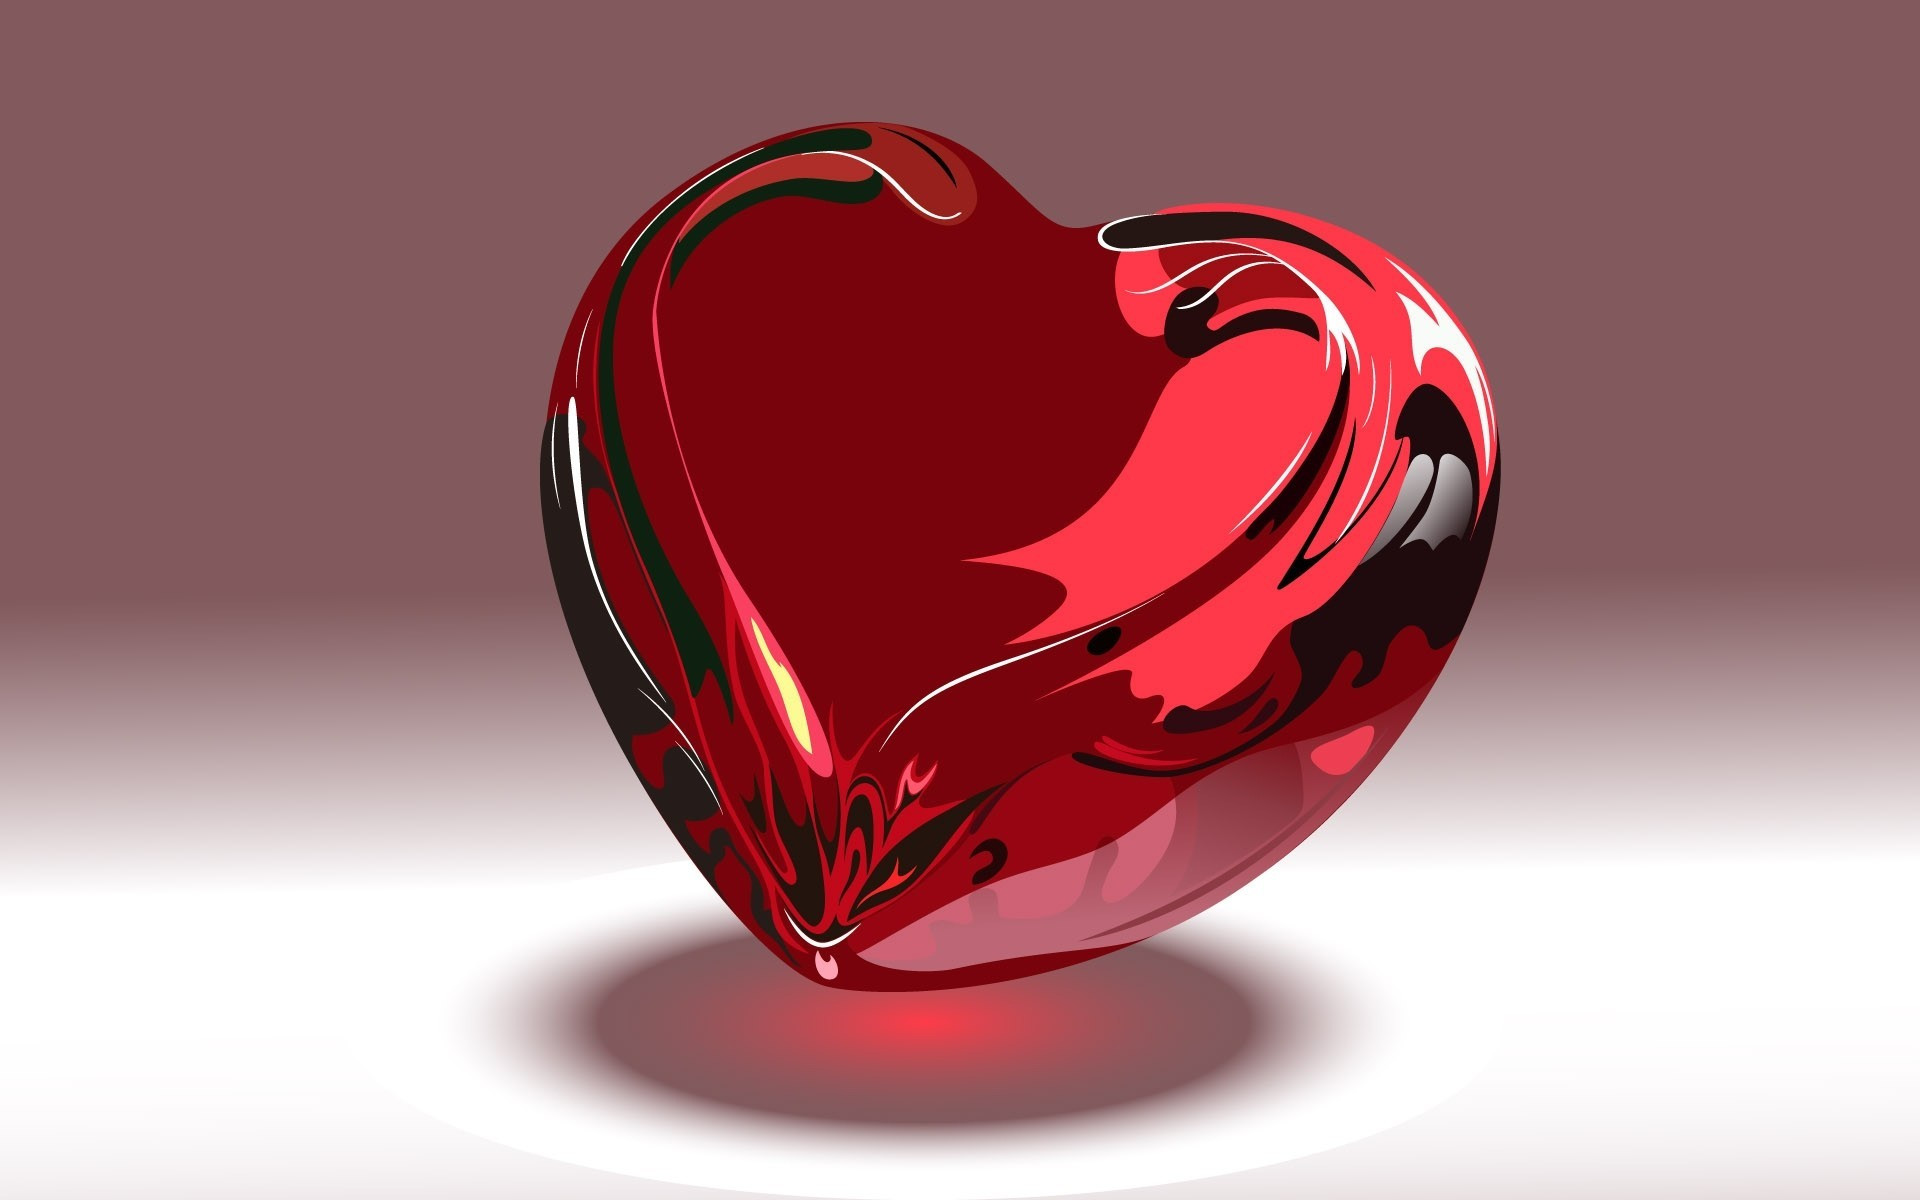 Hình ảnh trái tim đã trở thành một biểu tượng cho tình yêu và sự đam mê. Chúng tôi muốn giới thiệu những hình nền trái tim đẹp nhất để bạn trang trí cho màn hình điện thoại của mình.